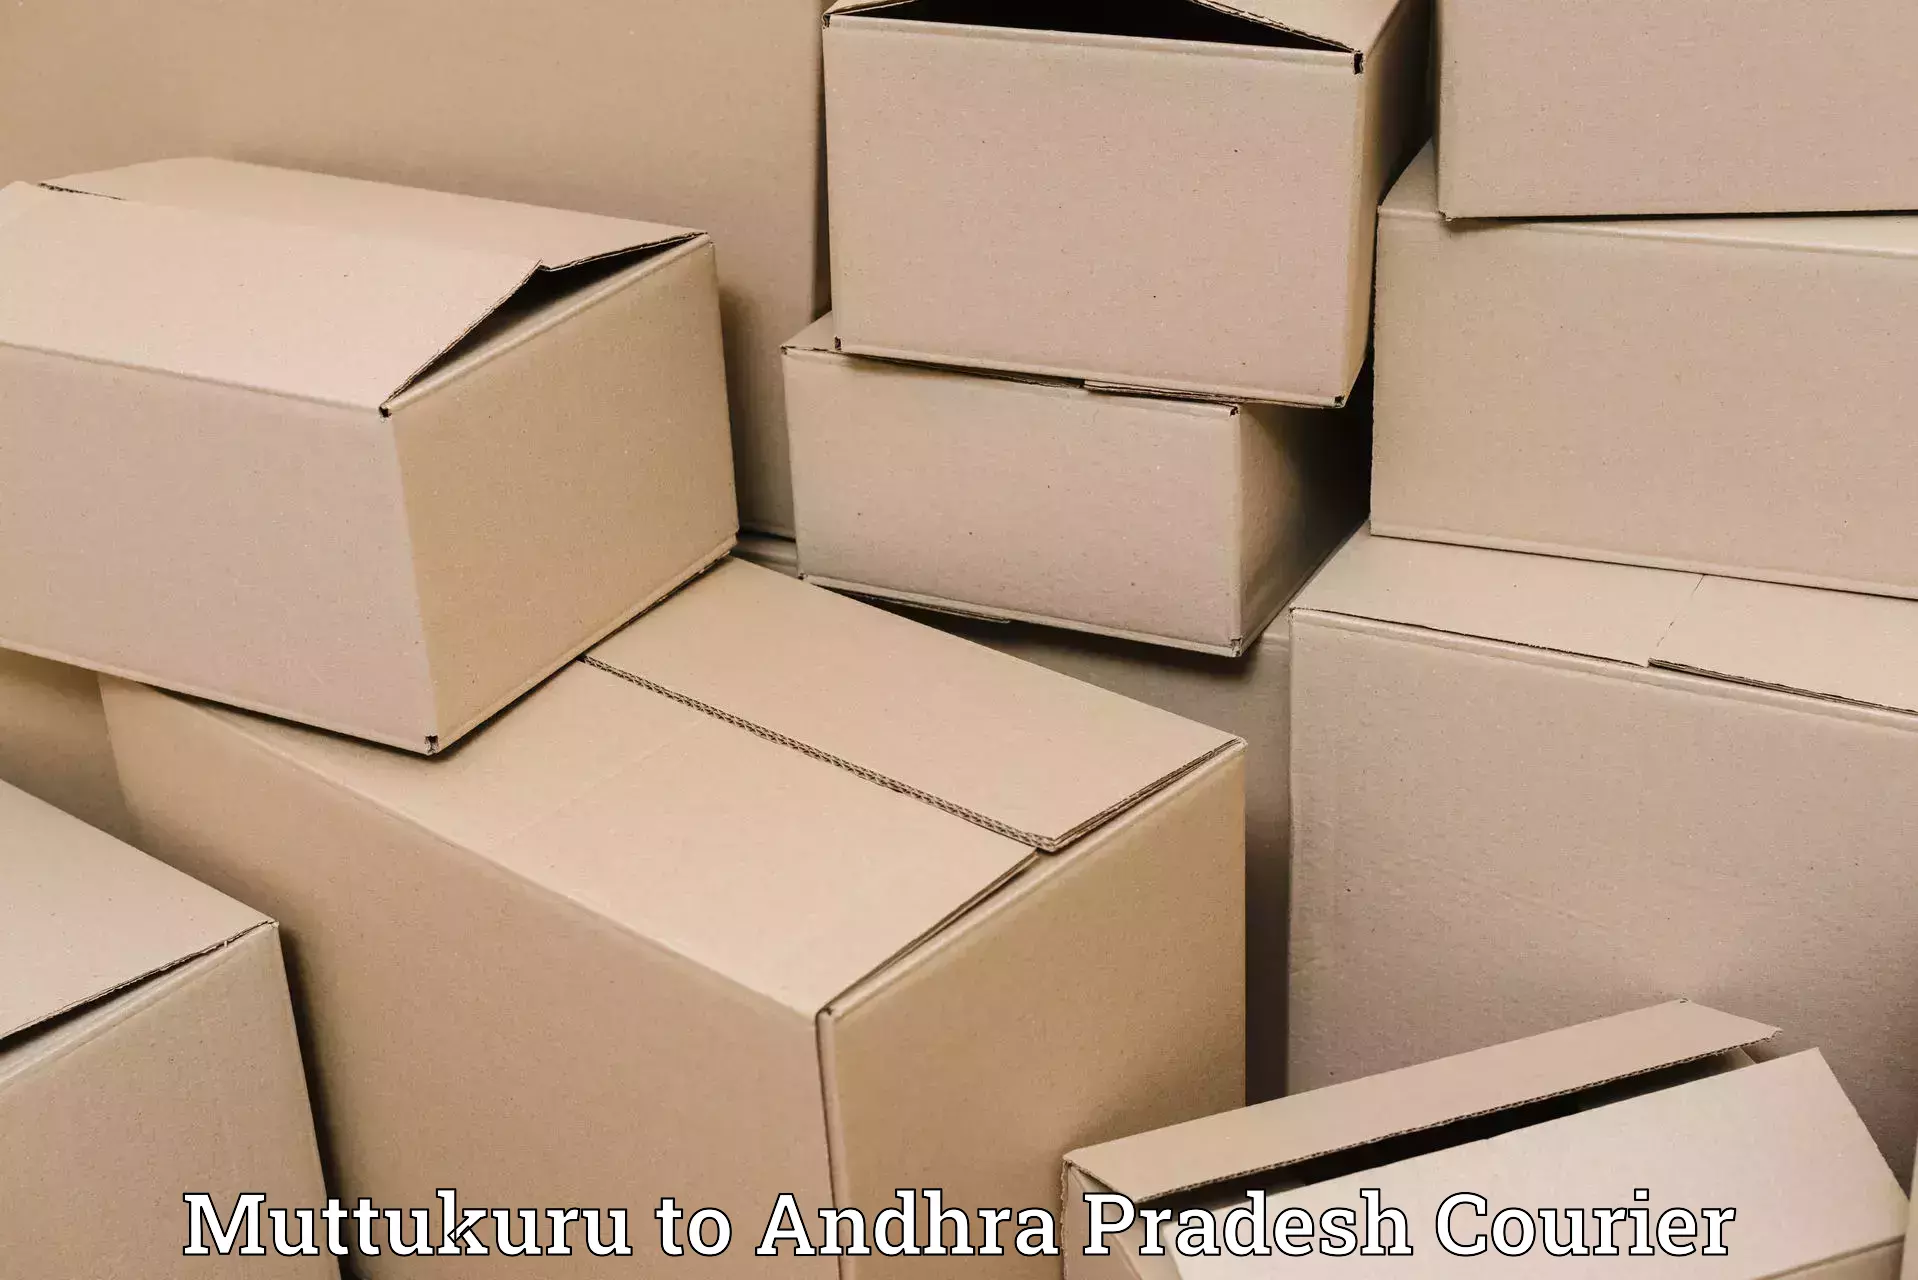 Scheduled delivery in Muttukuru to Bikkavolu